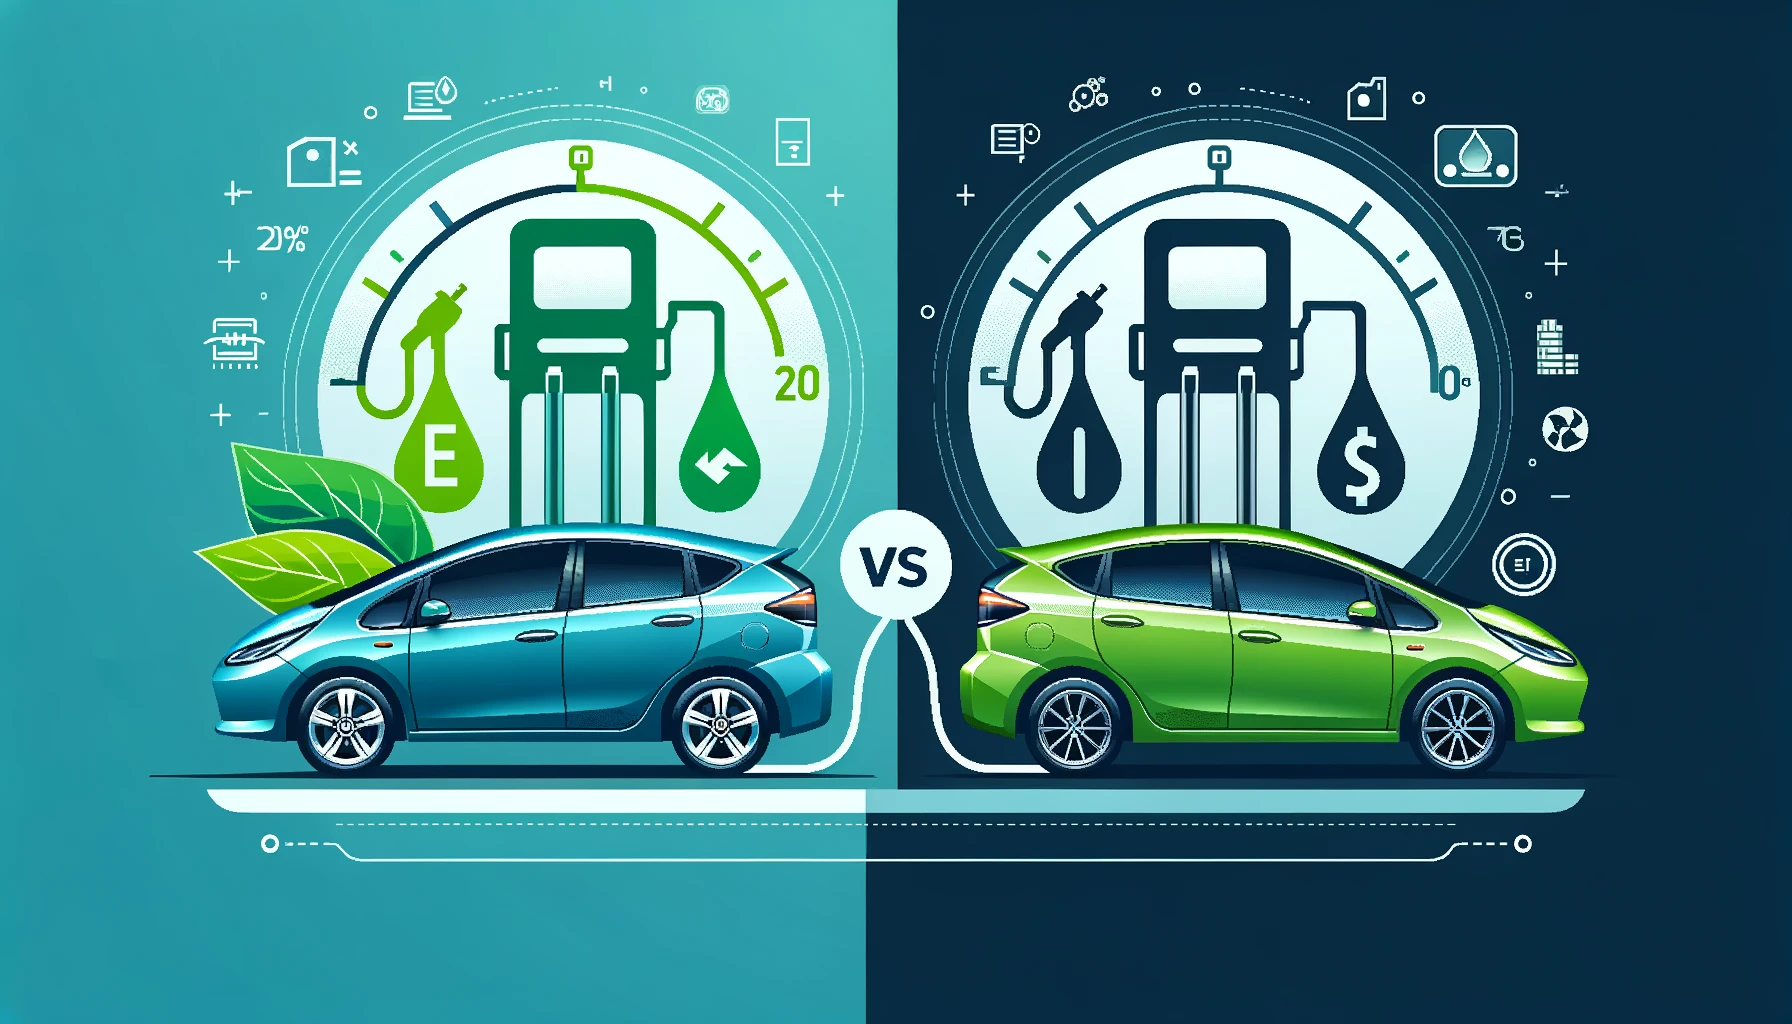 ハイブリッド車とガソリン車の比較 - 燃費性能とコスト分析